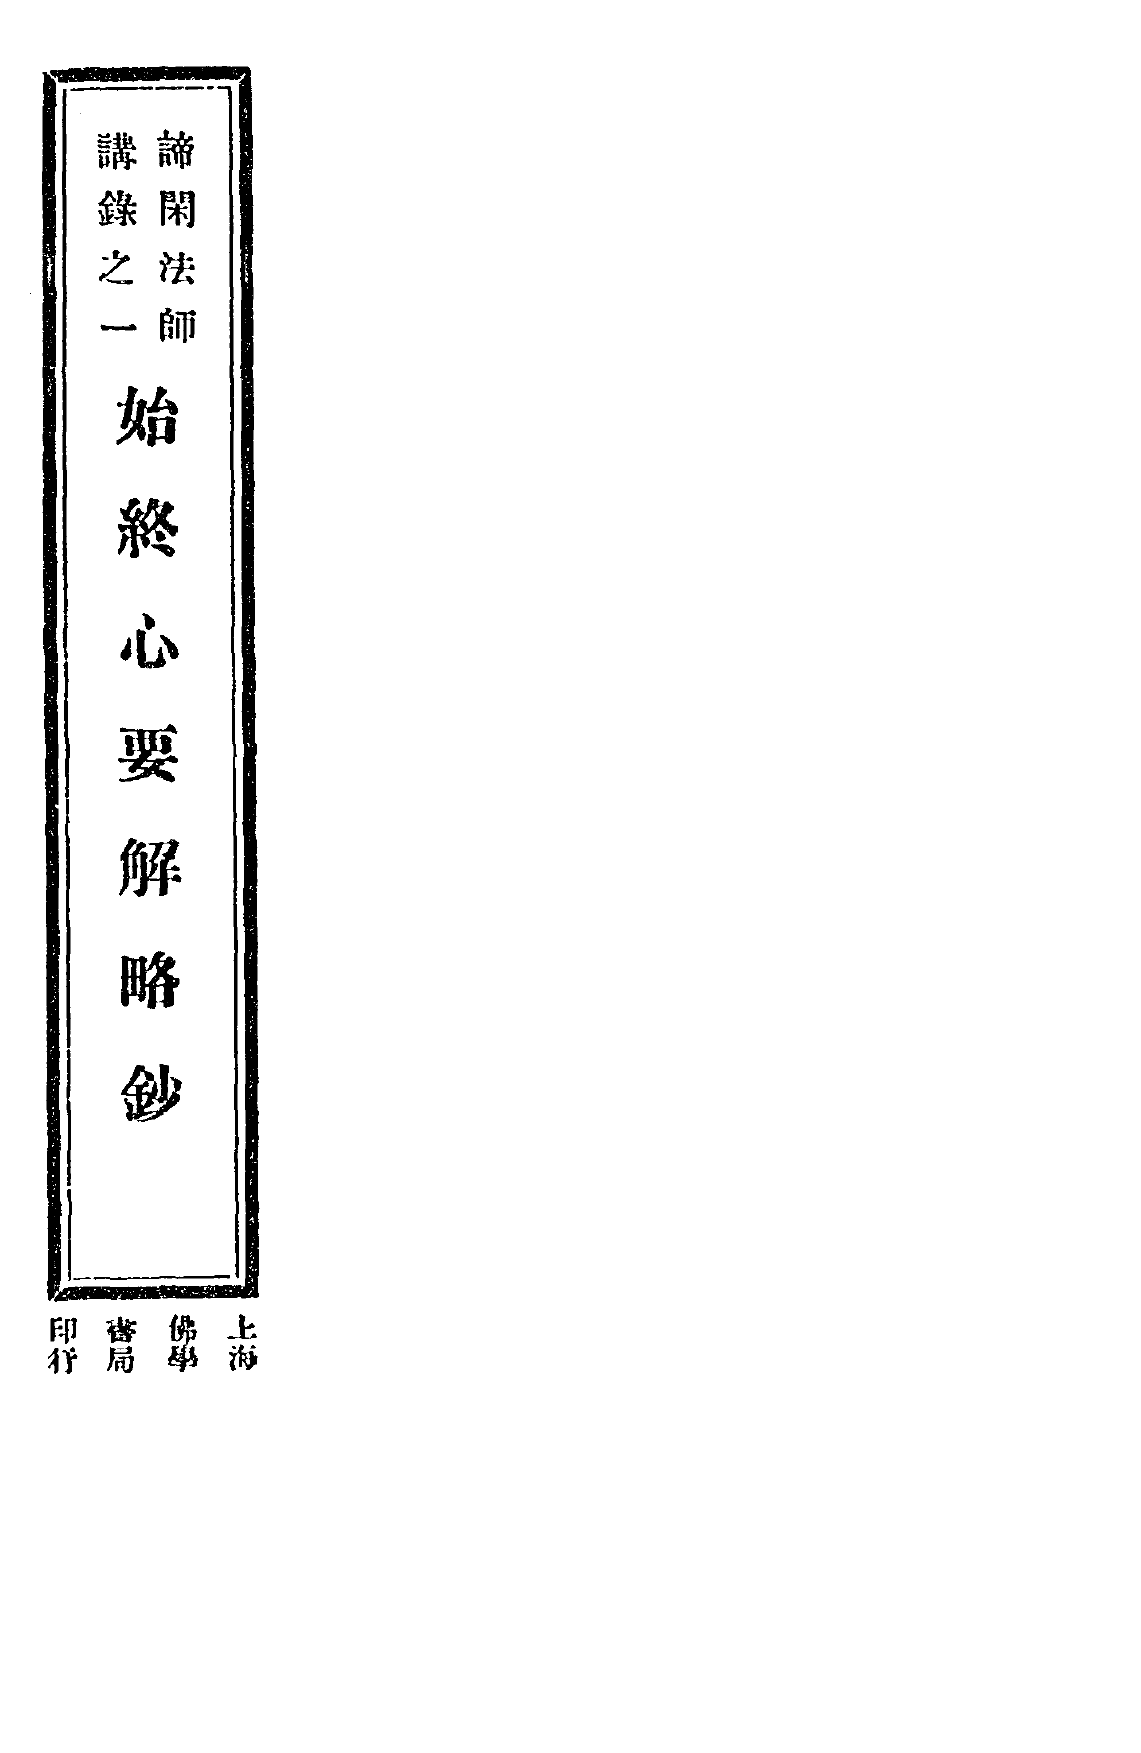 File:Shizhong xin yaojie luechao 1933.png